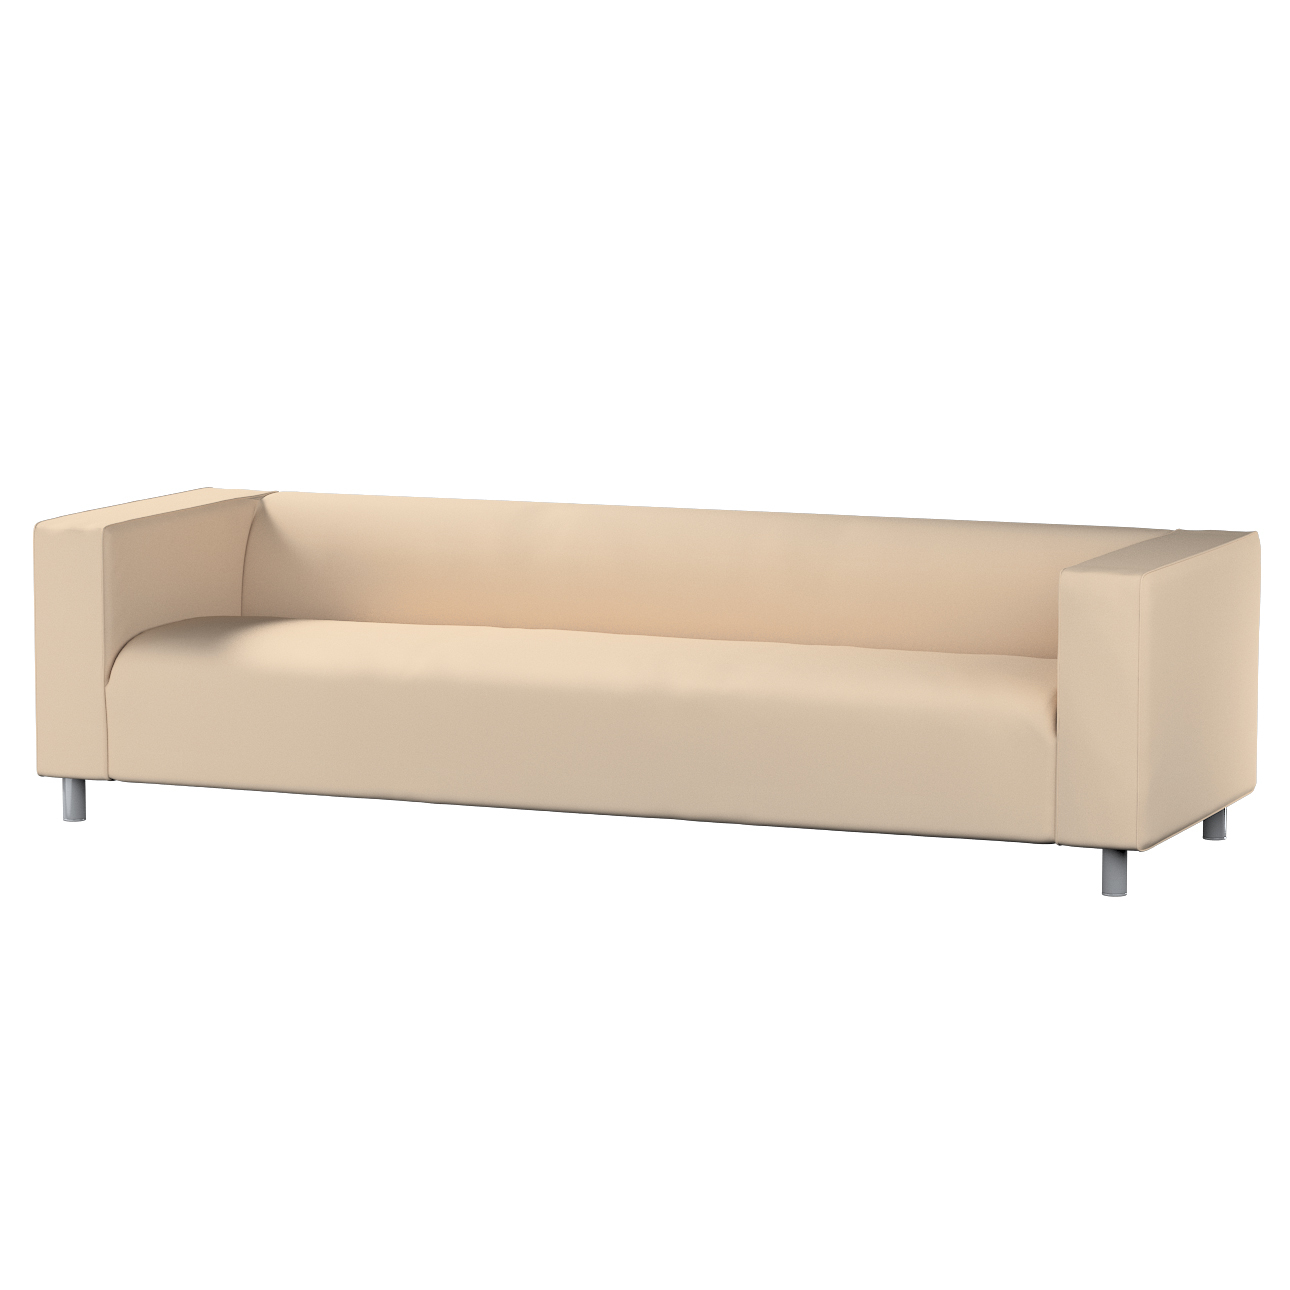 Bezug für Klippan 4-Sitzer Sofa, creme-beige, Bezug für Klippan 4-Sitzer, L günstig online kaufen